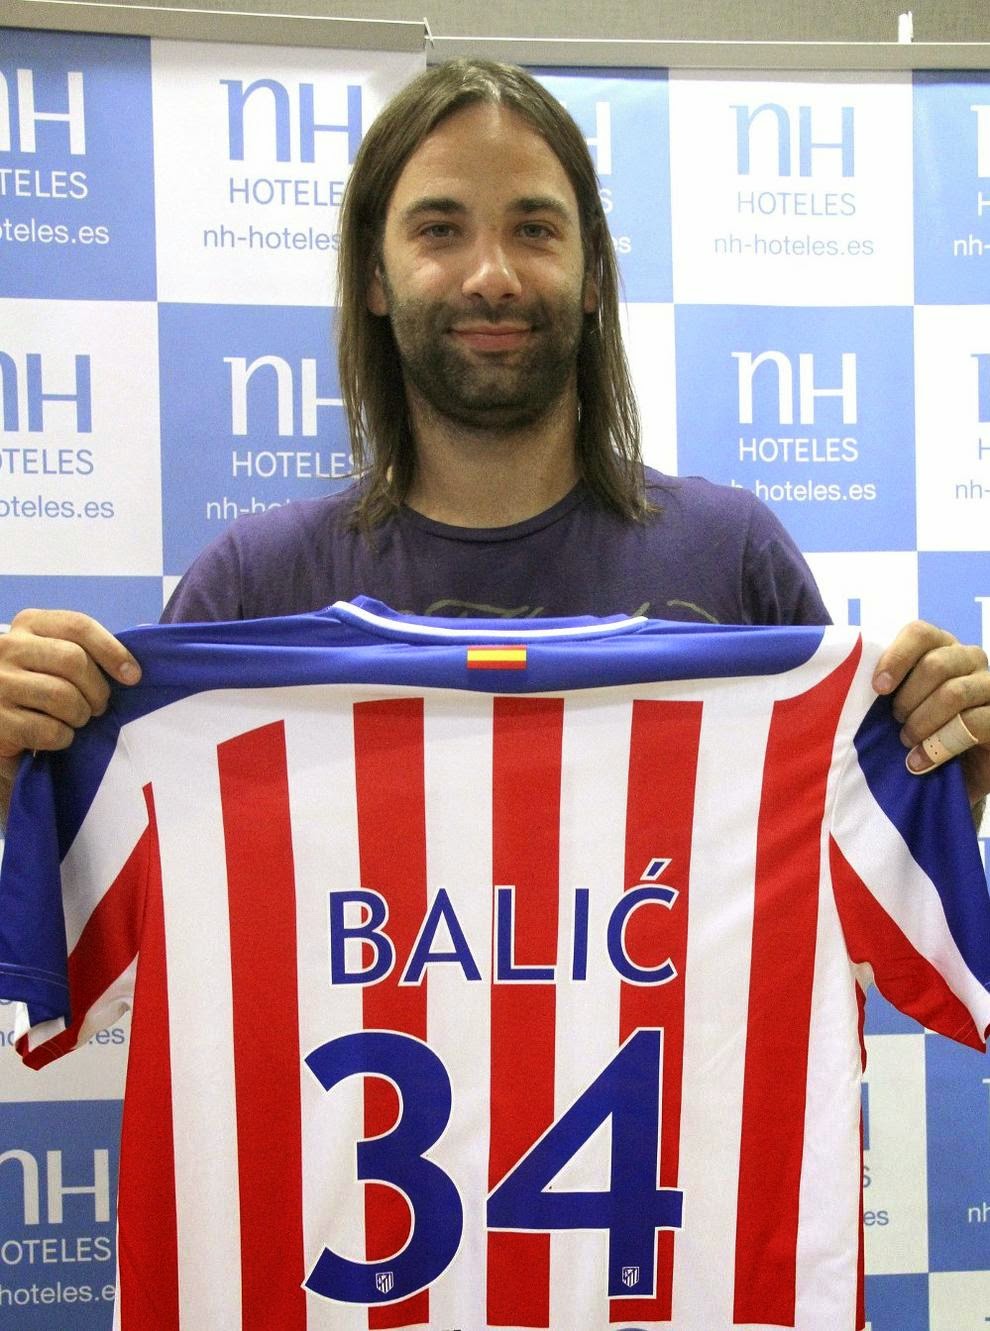 Ivano Balić - O Melhor Jogador de Handebol do Mundo 